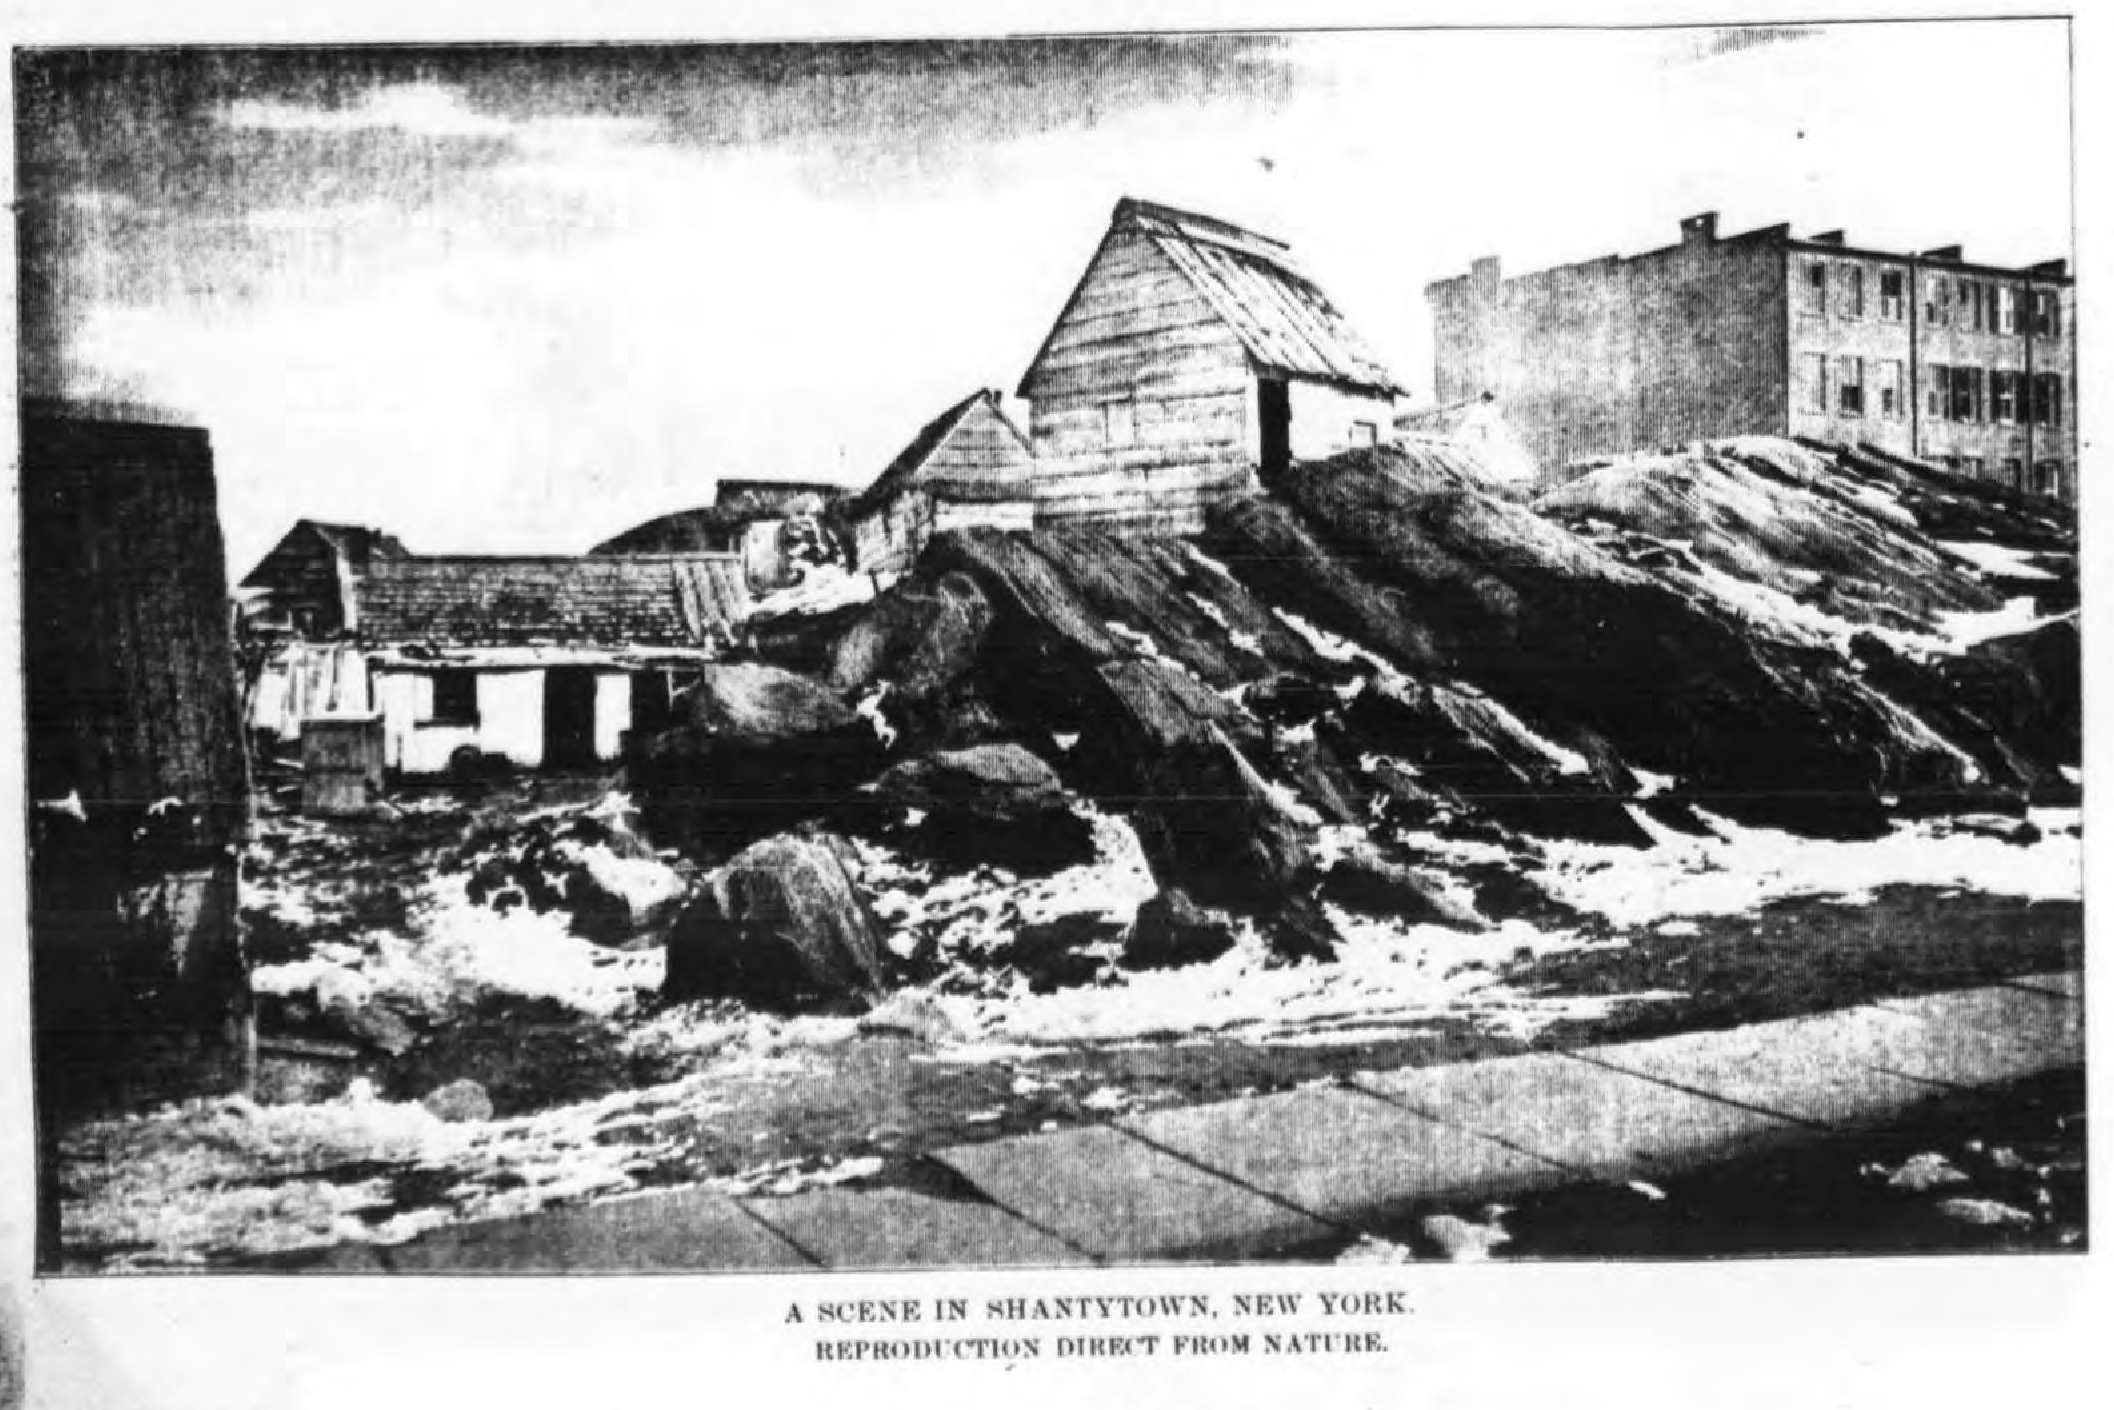 A Scene in Shantytown, New York (1880)